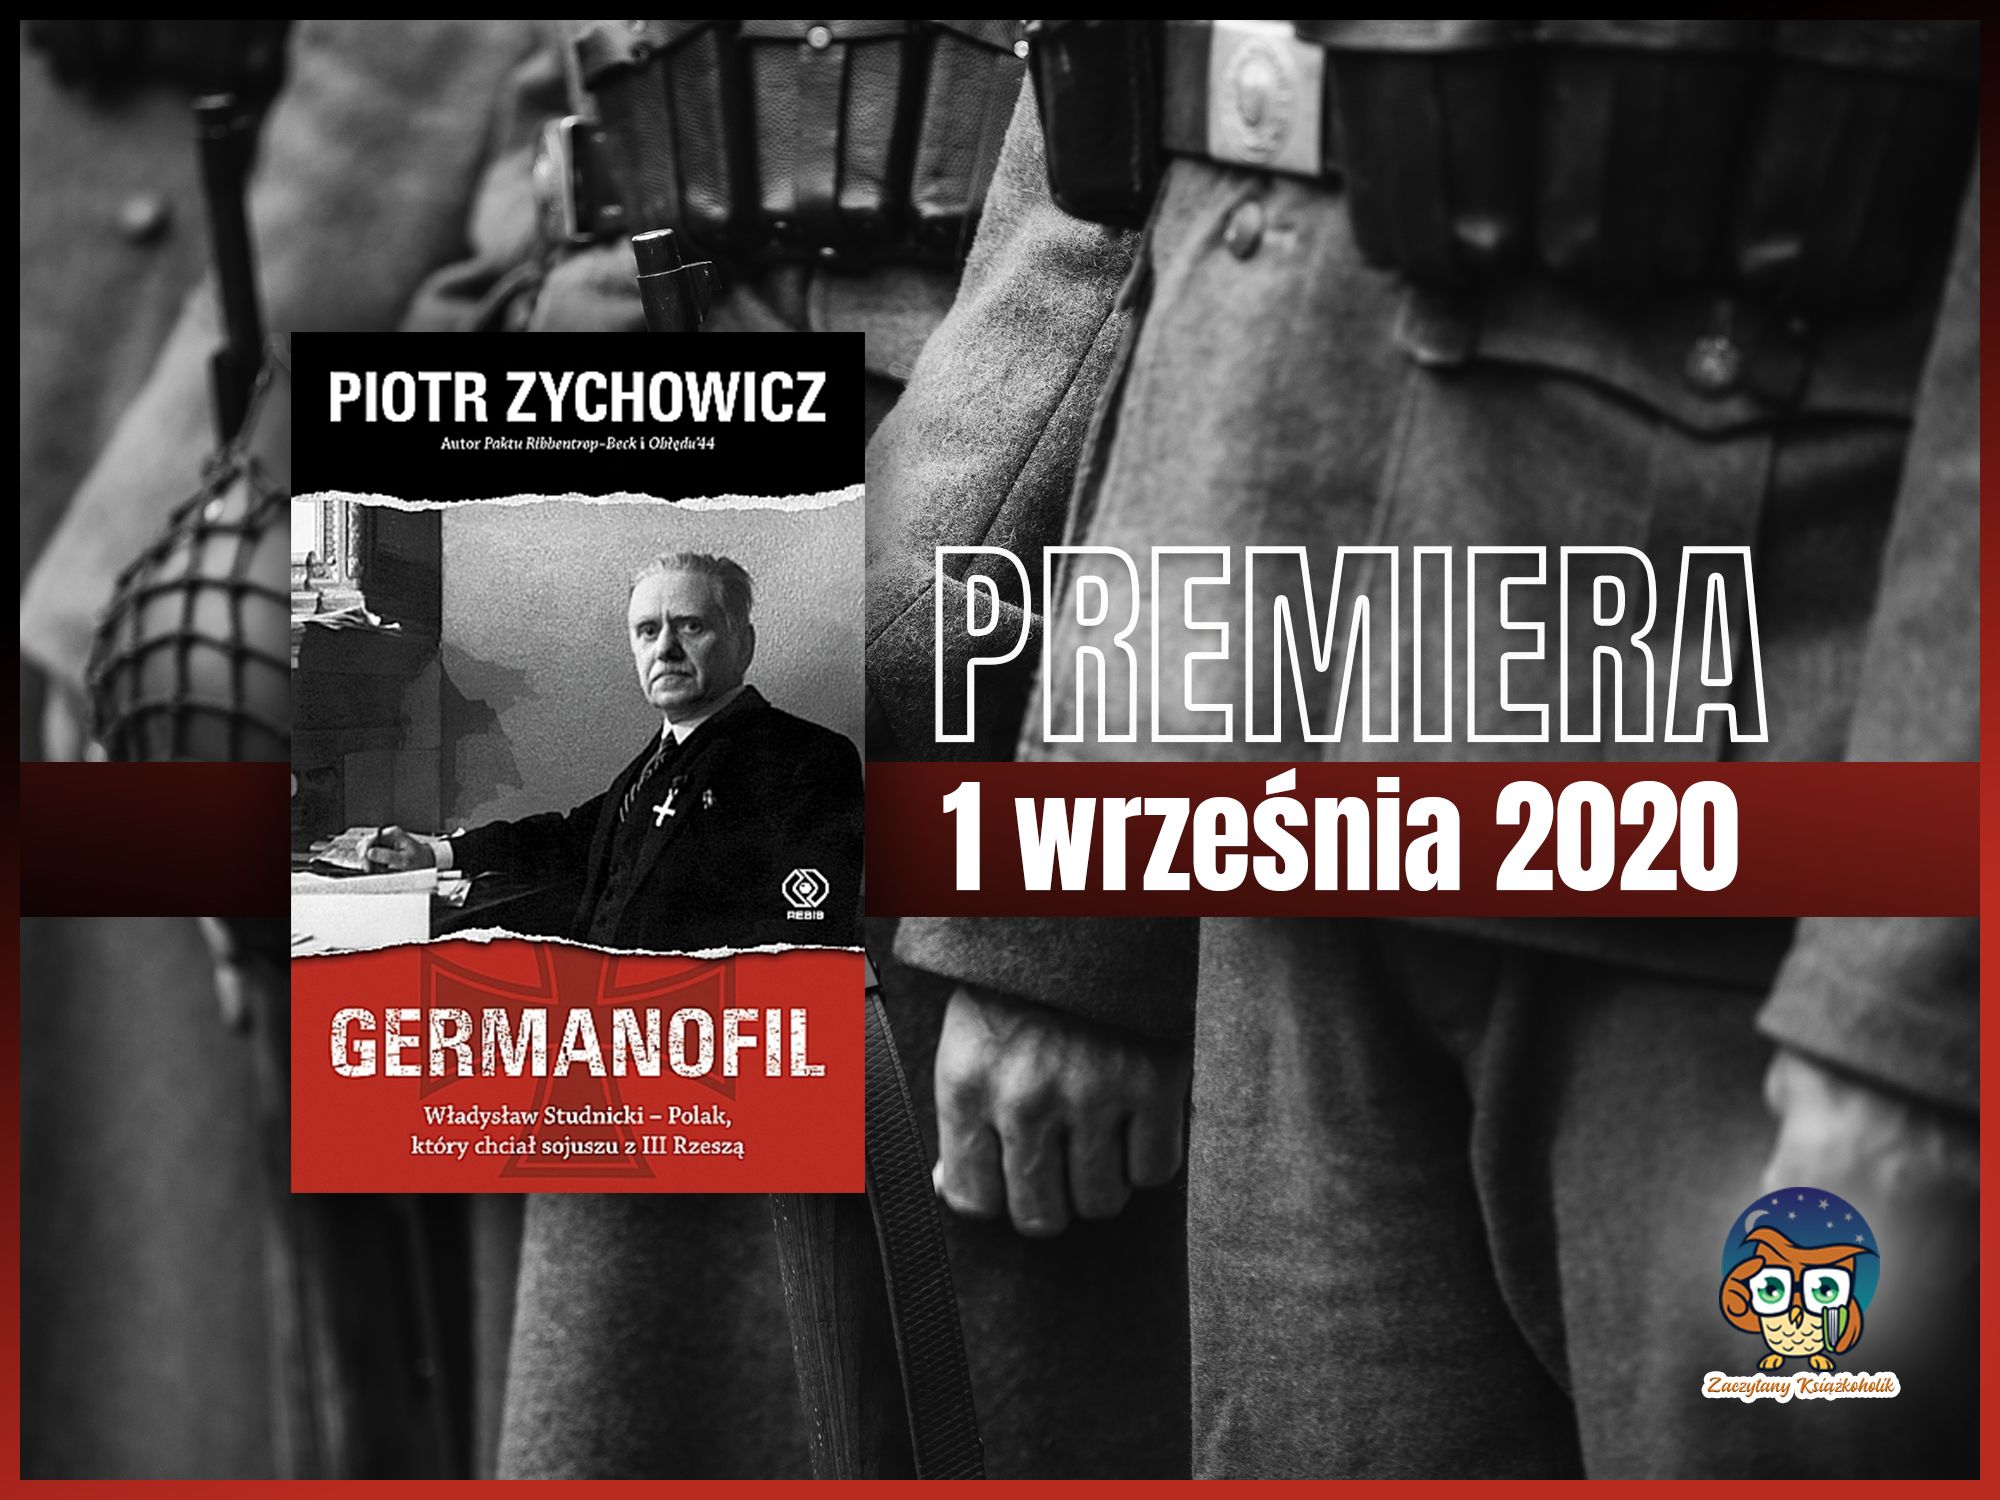 "Germanofil. Władysław Studnicki – Polak, który chciał sojuszu z III Rzeszą", Piotr Zychowicz